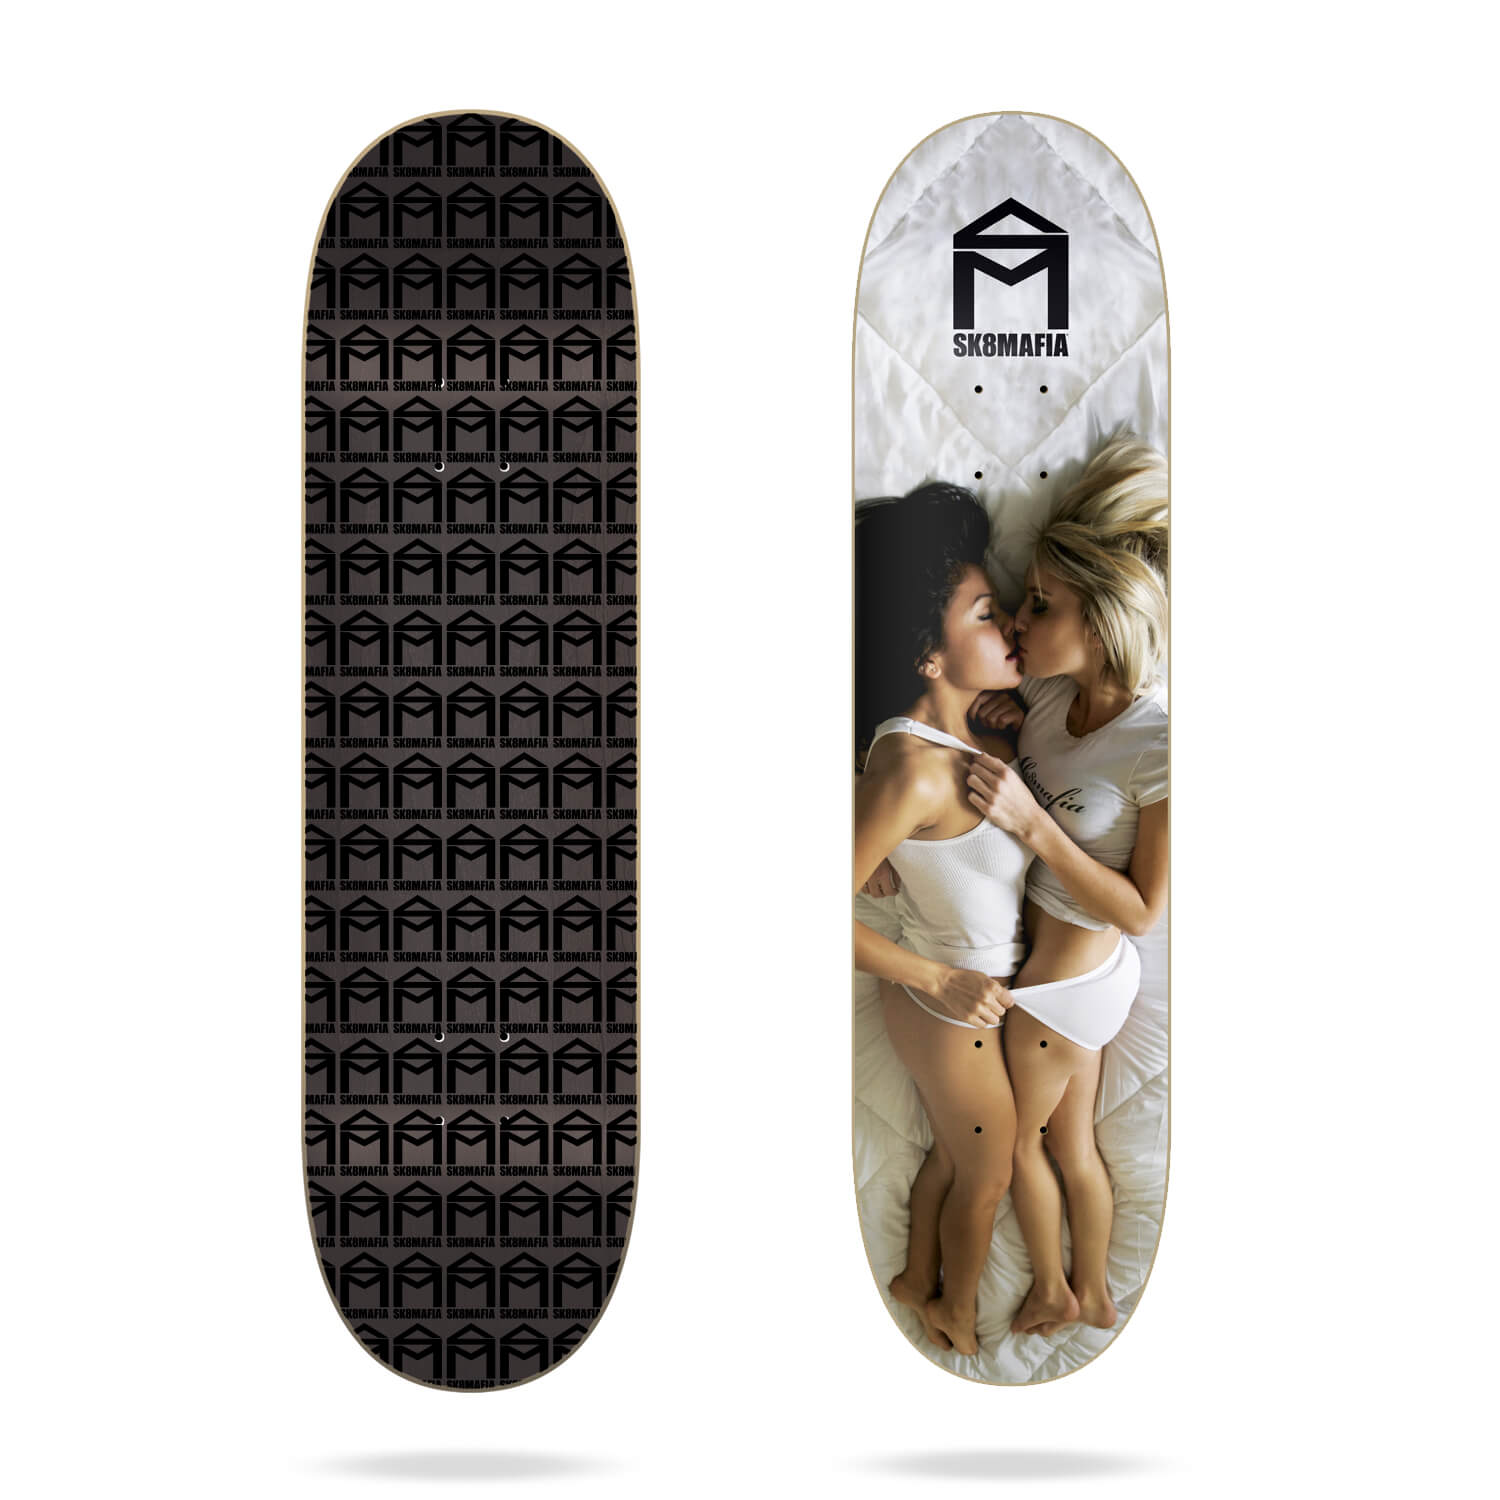 sk8mafia Love 8" skateboard deck